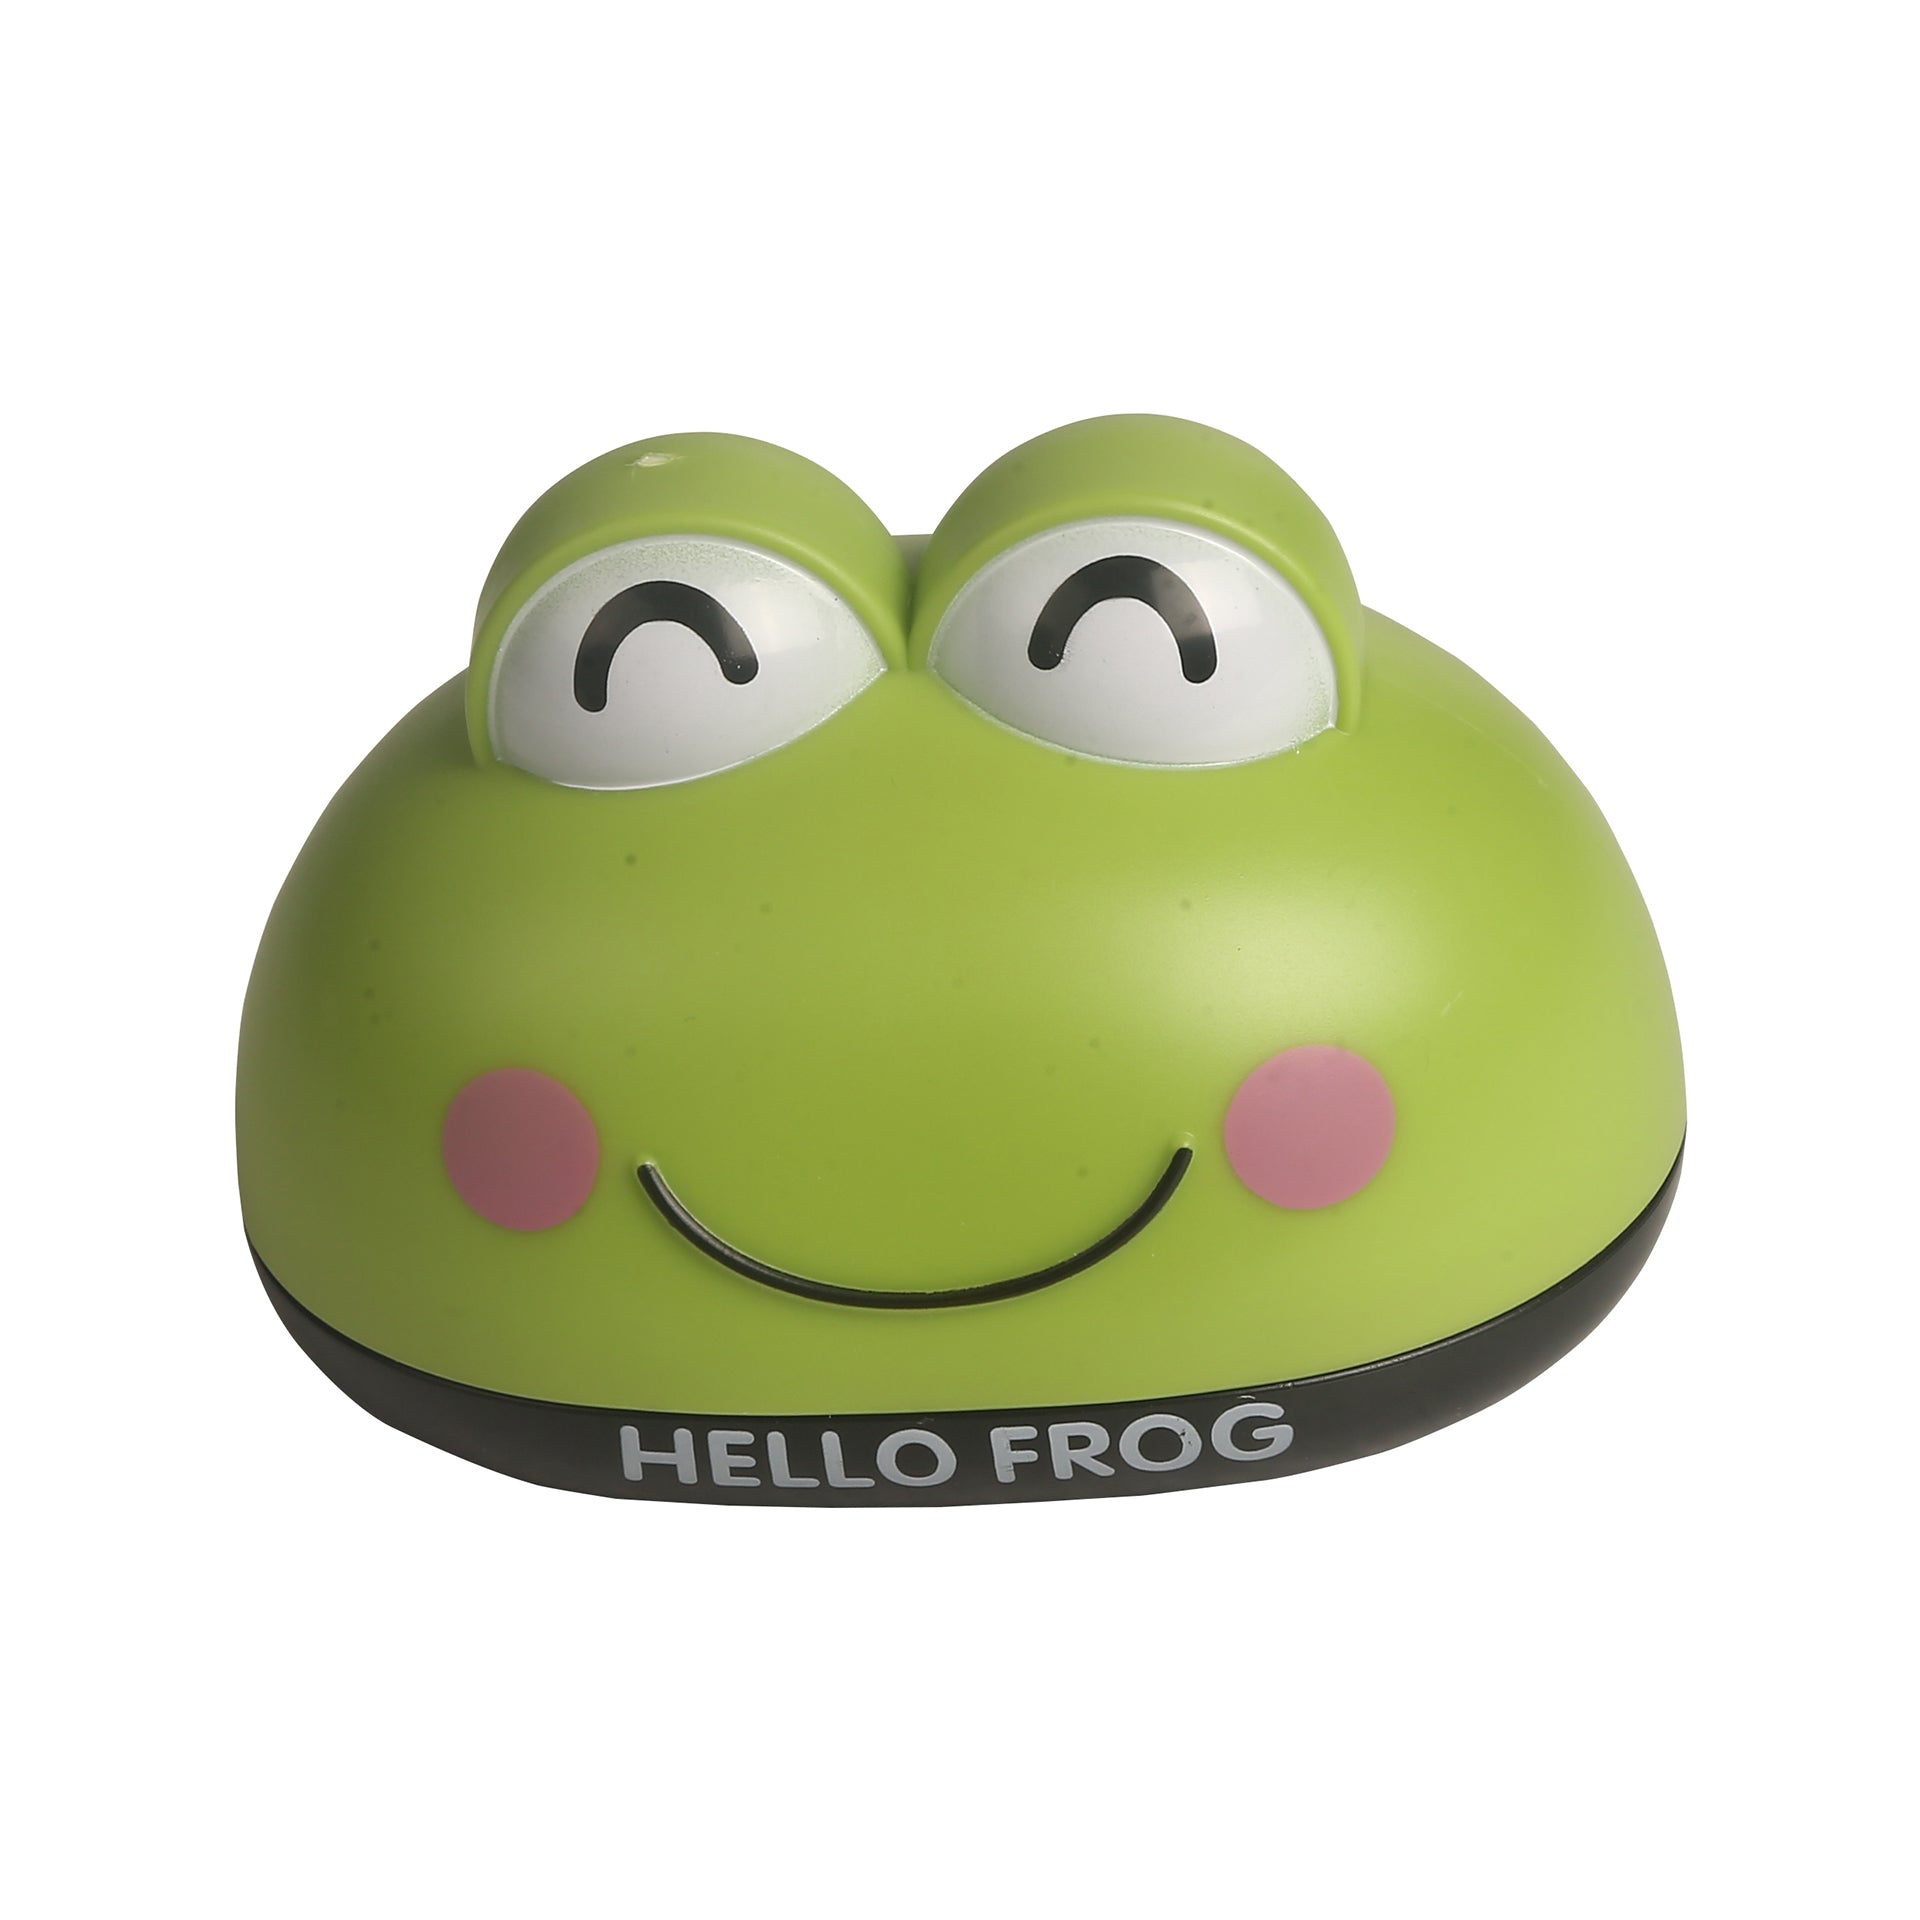 Frog Green Soap Box - Baby Moo